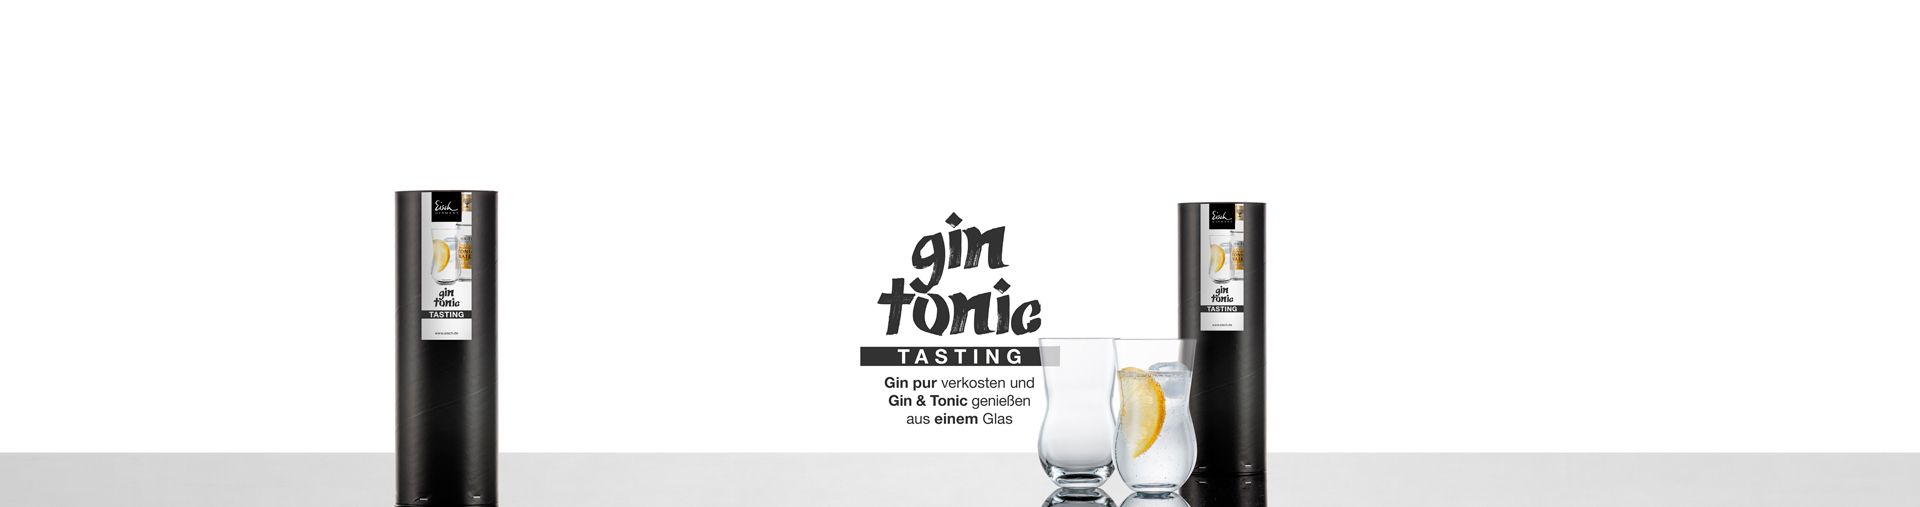 Eisch Gin Tonic Tasting Glas, entwickelt mit Jürgen Deibel